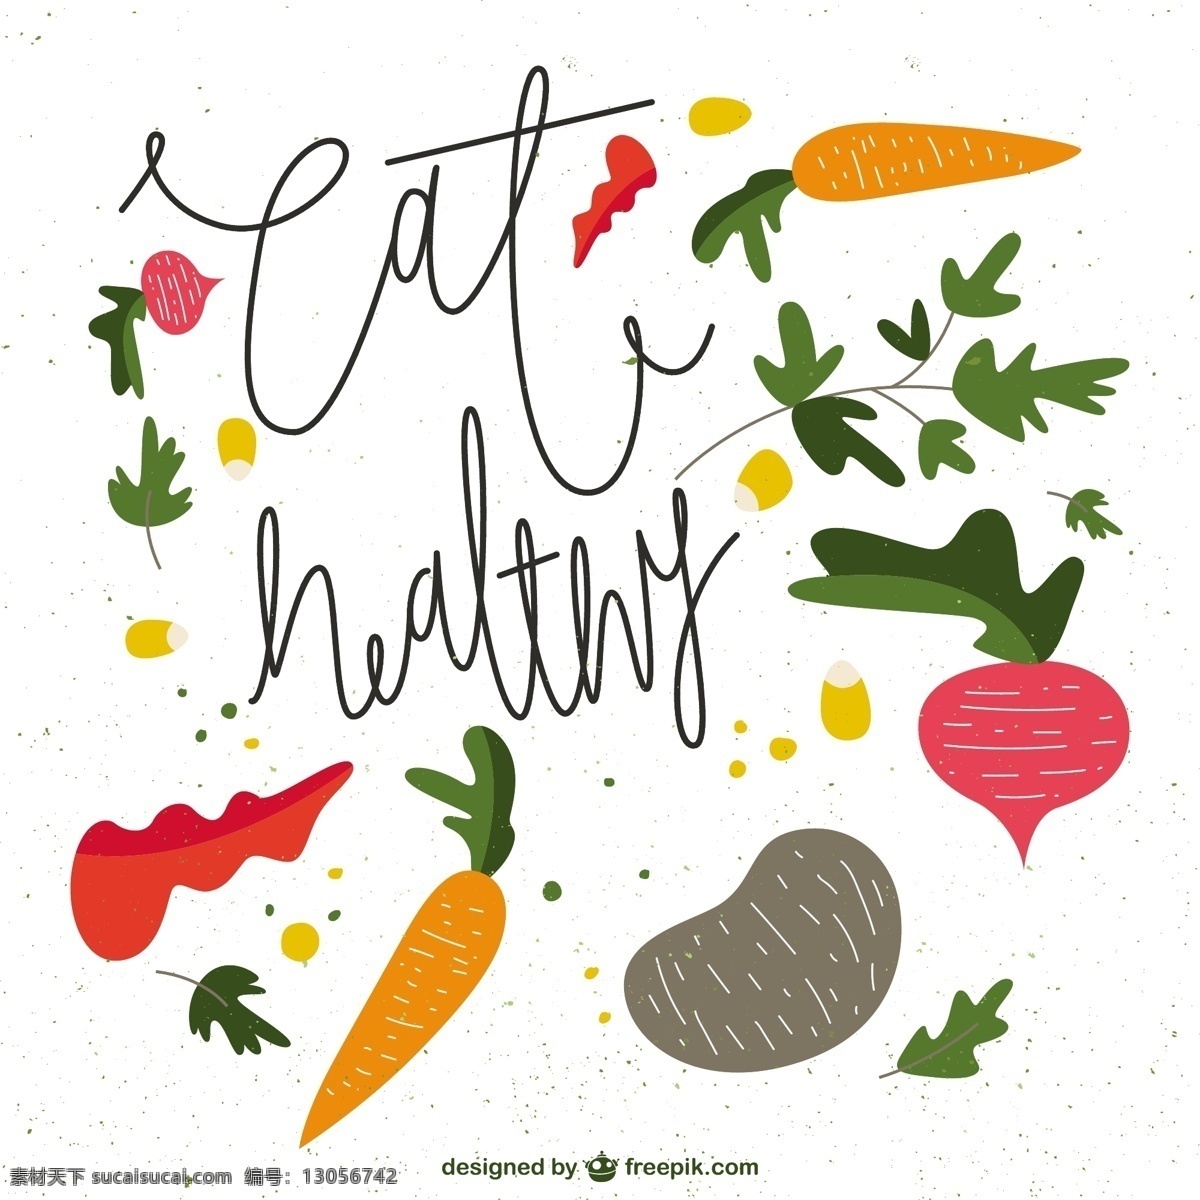 吃的健康 食物方面 自然 健康 水果 蔬菜 手绘 画 吃健康食品 插图 绘制粗略 白色